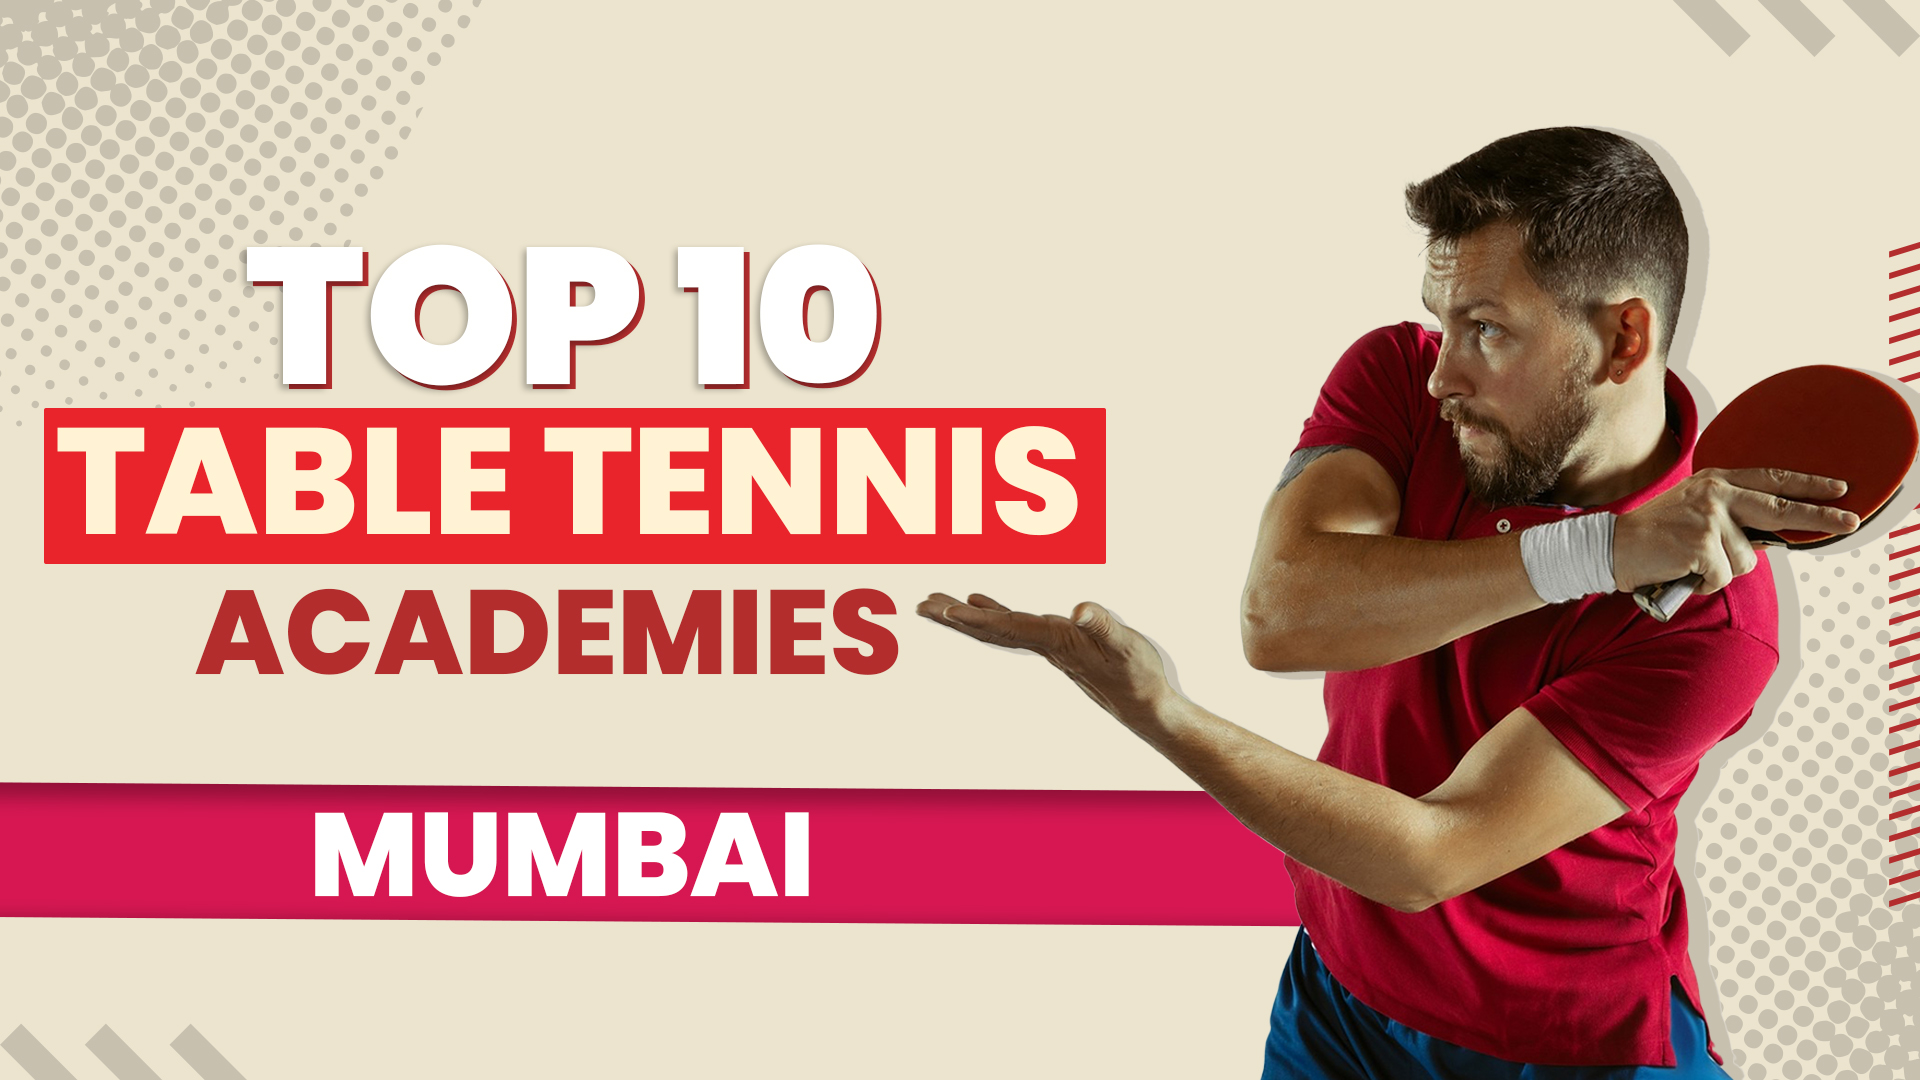 Top 10 Table Tennis Academies in Mumbai, India